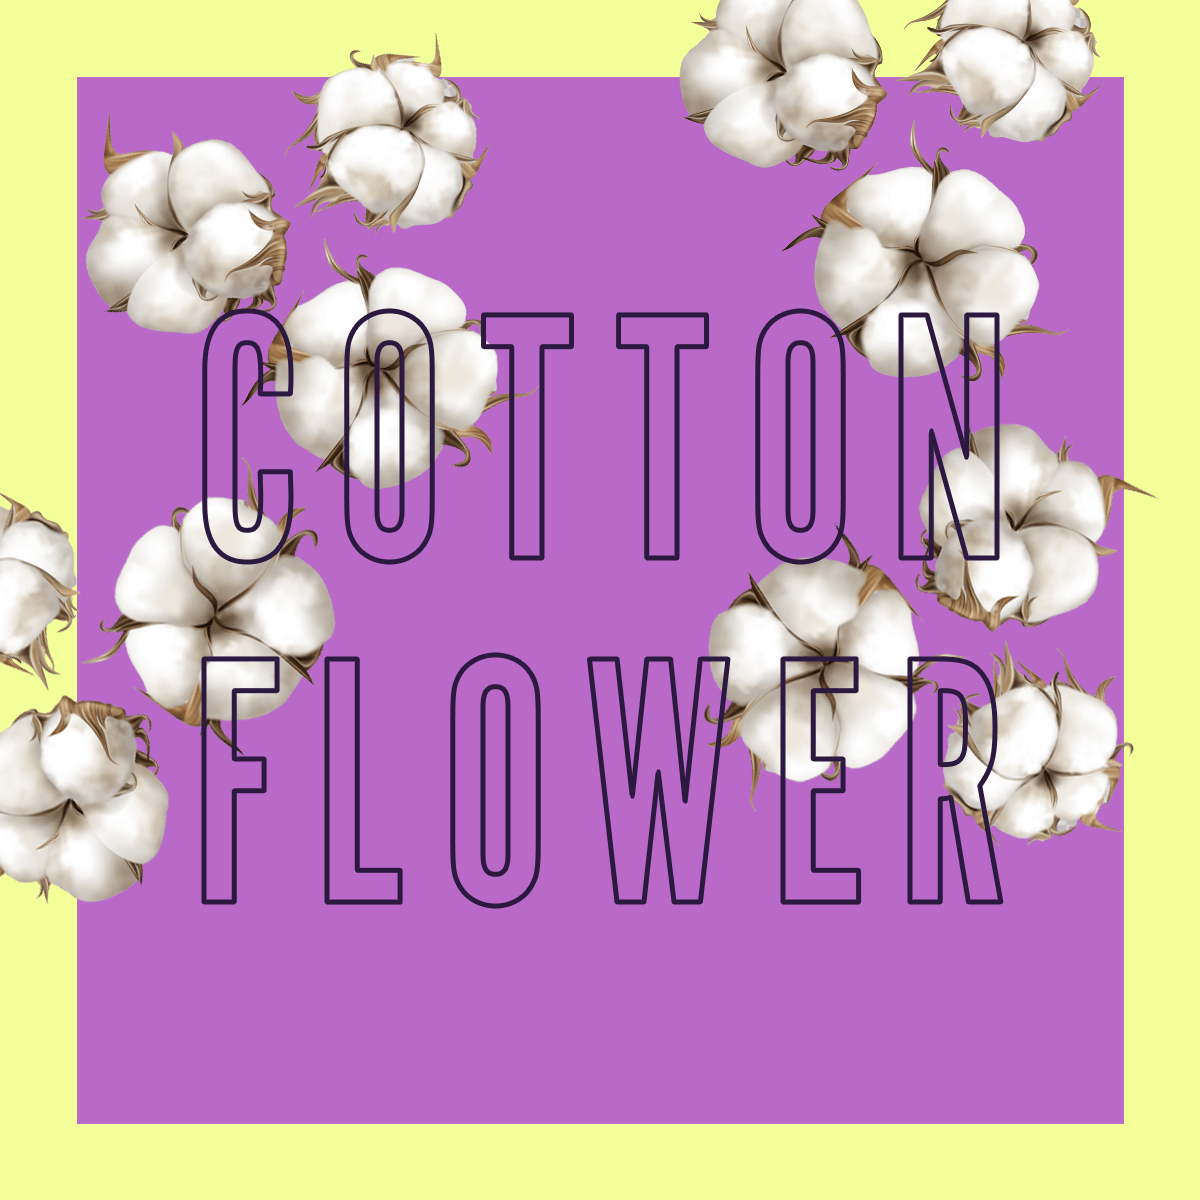 Edizione limitata del profumo Cotton Flower 100ml